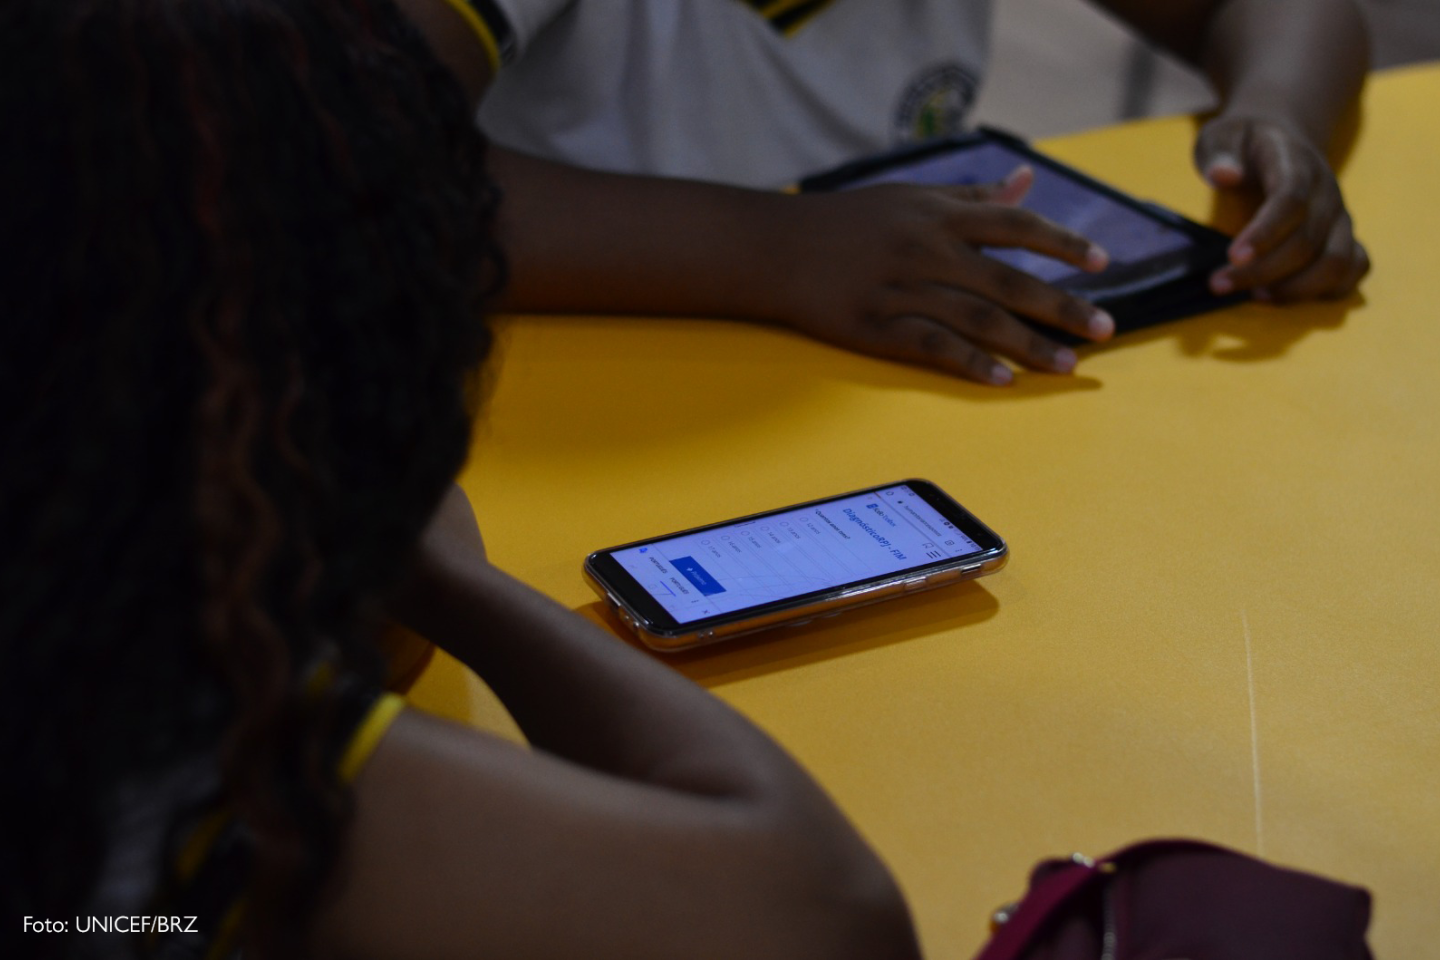 Duas pessoas jovens respondendo a pesquisa no celular e o crédito da imagem (UNICEF/BRZ) anotado no canto esquero